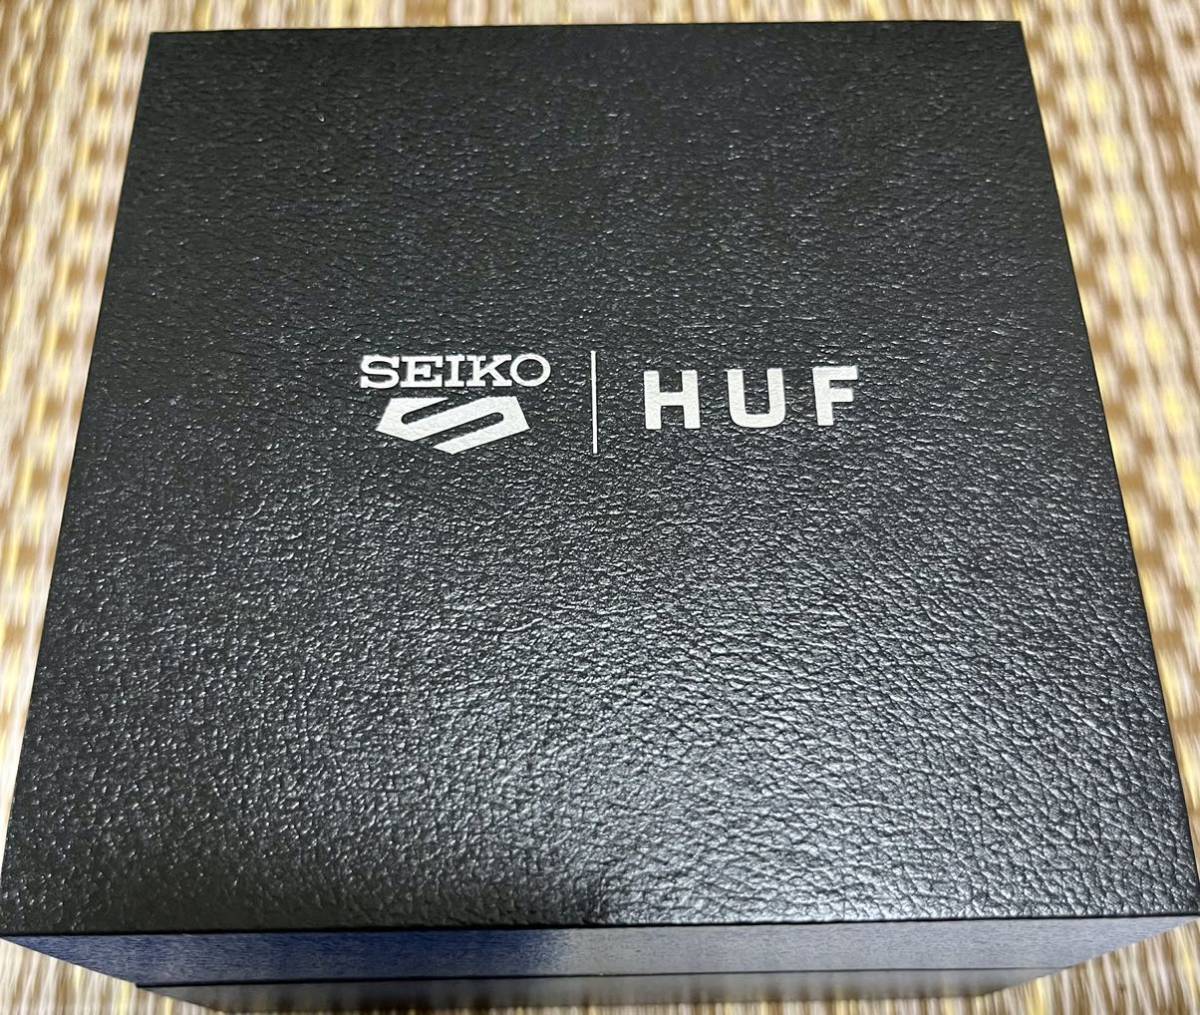 即決 送料無料Seiko 5 Sports HUF コラボレーション限定モデル SBSA164